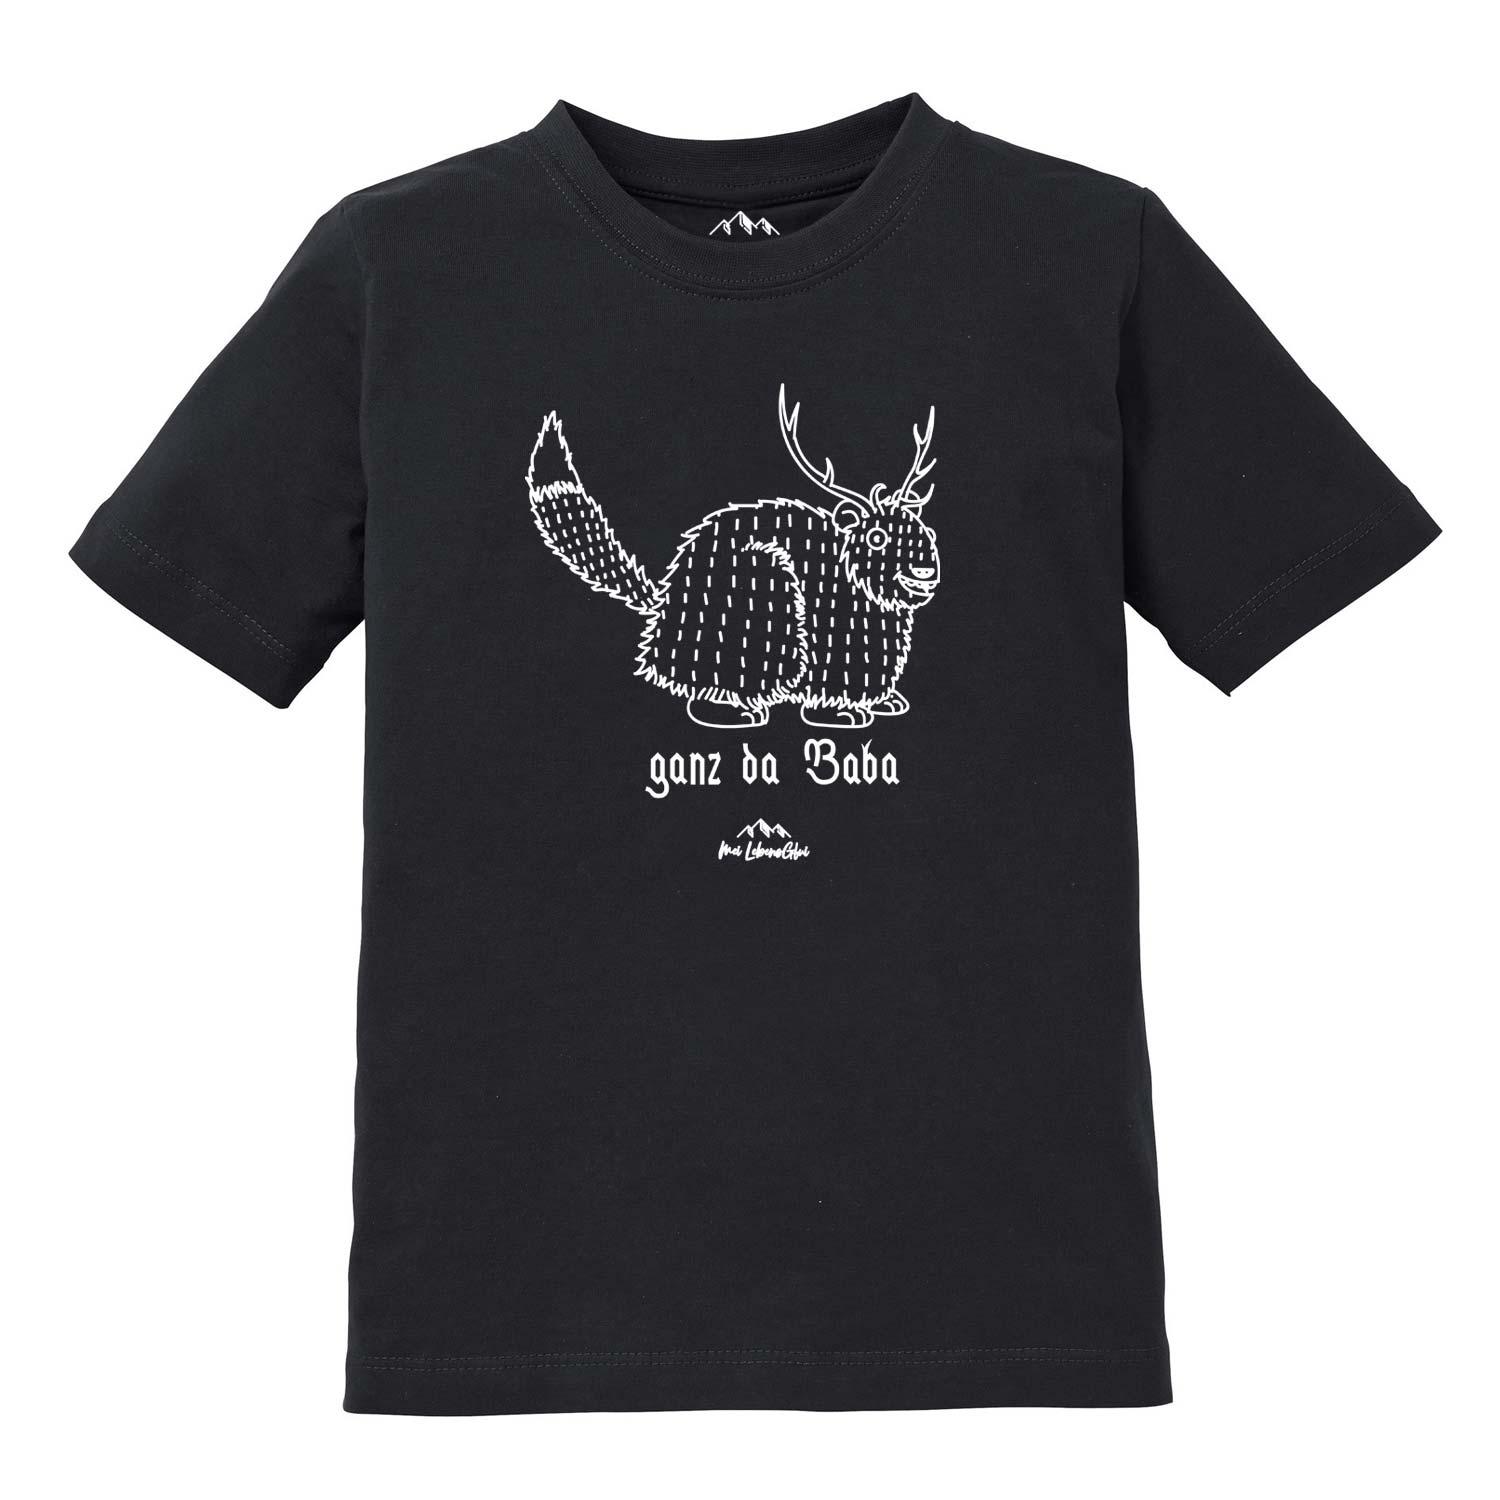 Kinder T-Shirt Wolpertinger "Ganz da Baba" - bavariashop - mei LebensGfui